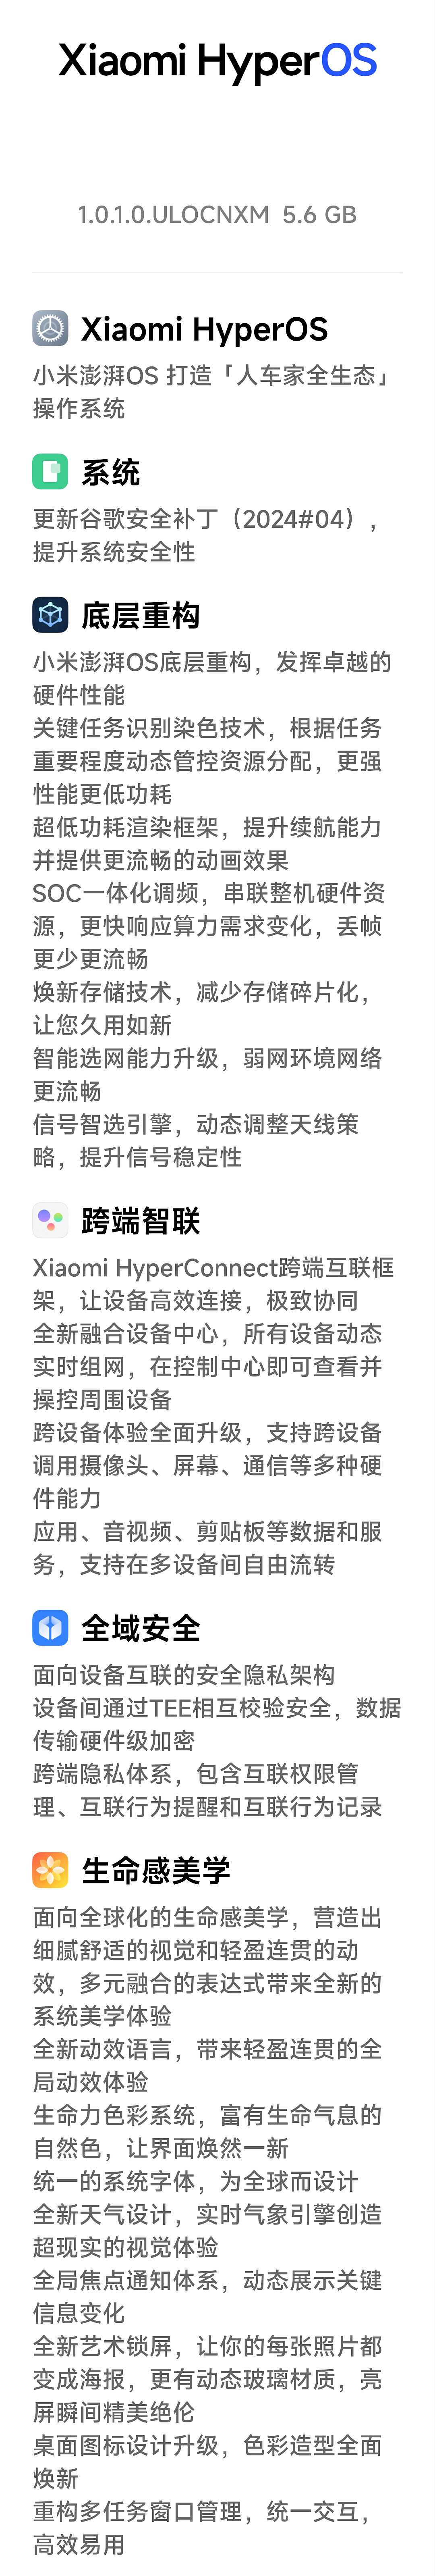 小米 Redmi Note 11T Pro 手机获推澎湃 HyperOS 正式版更新，附带谷歌 4 月安全补丁 - 2